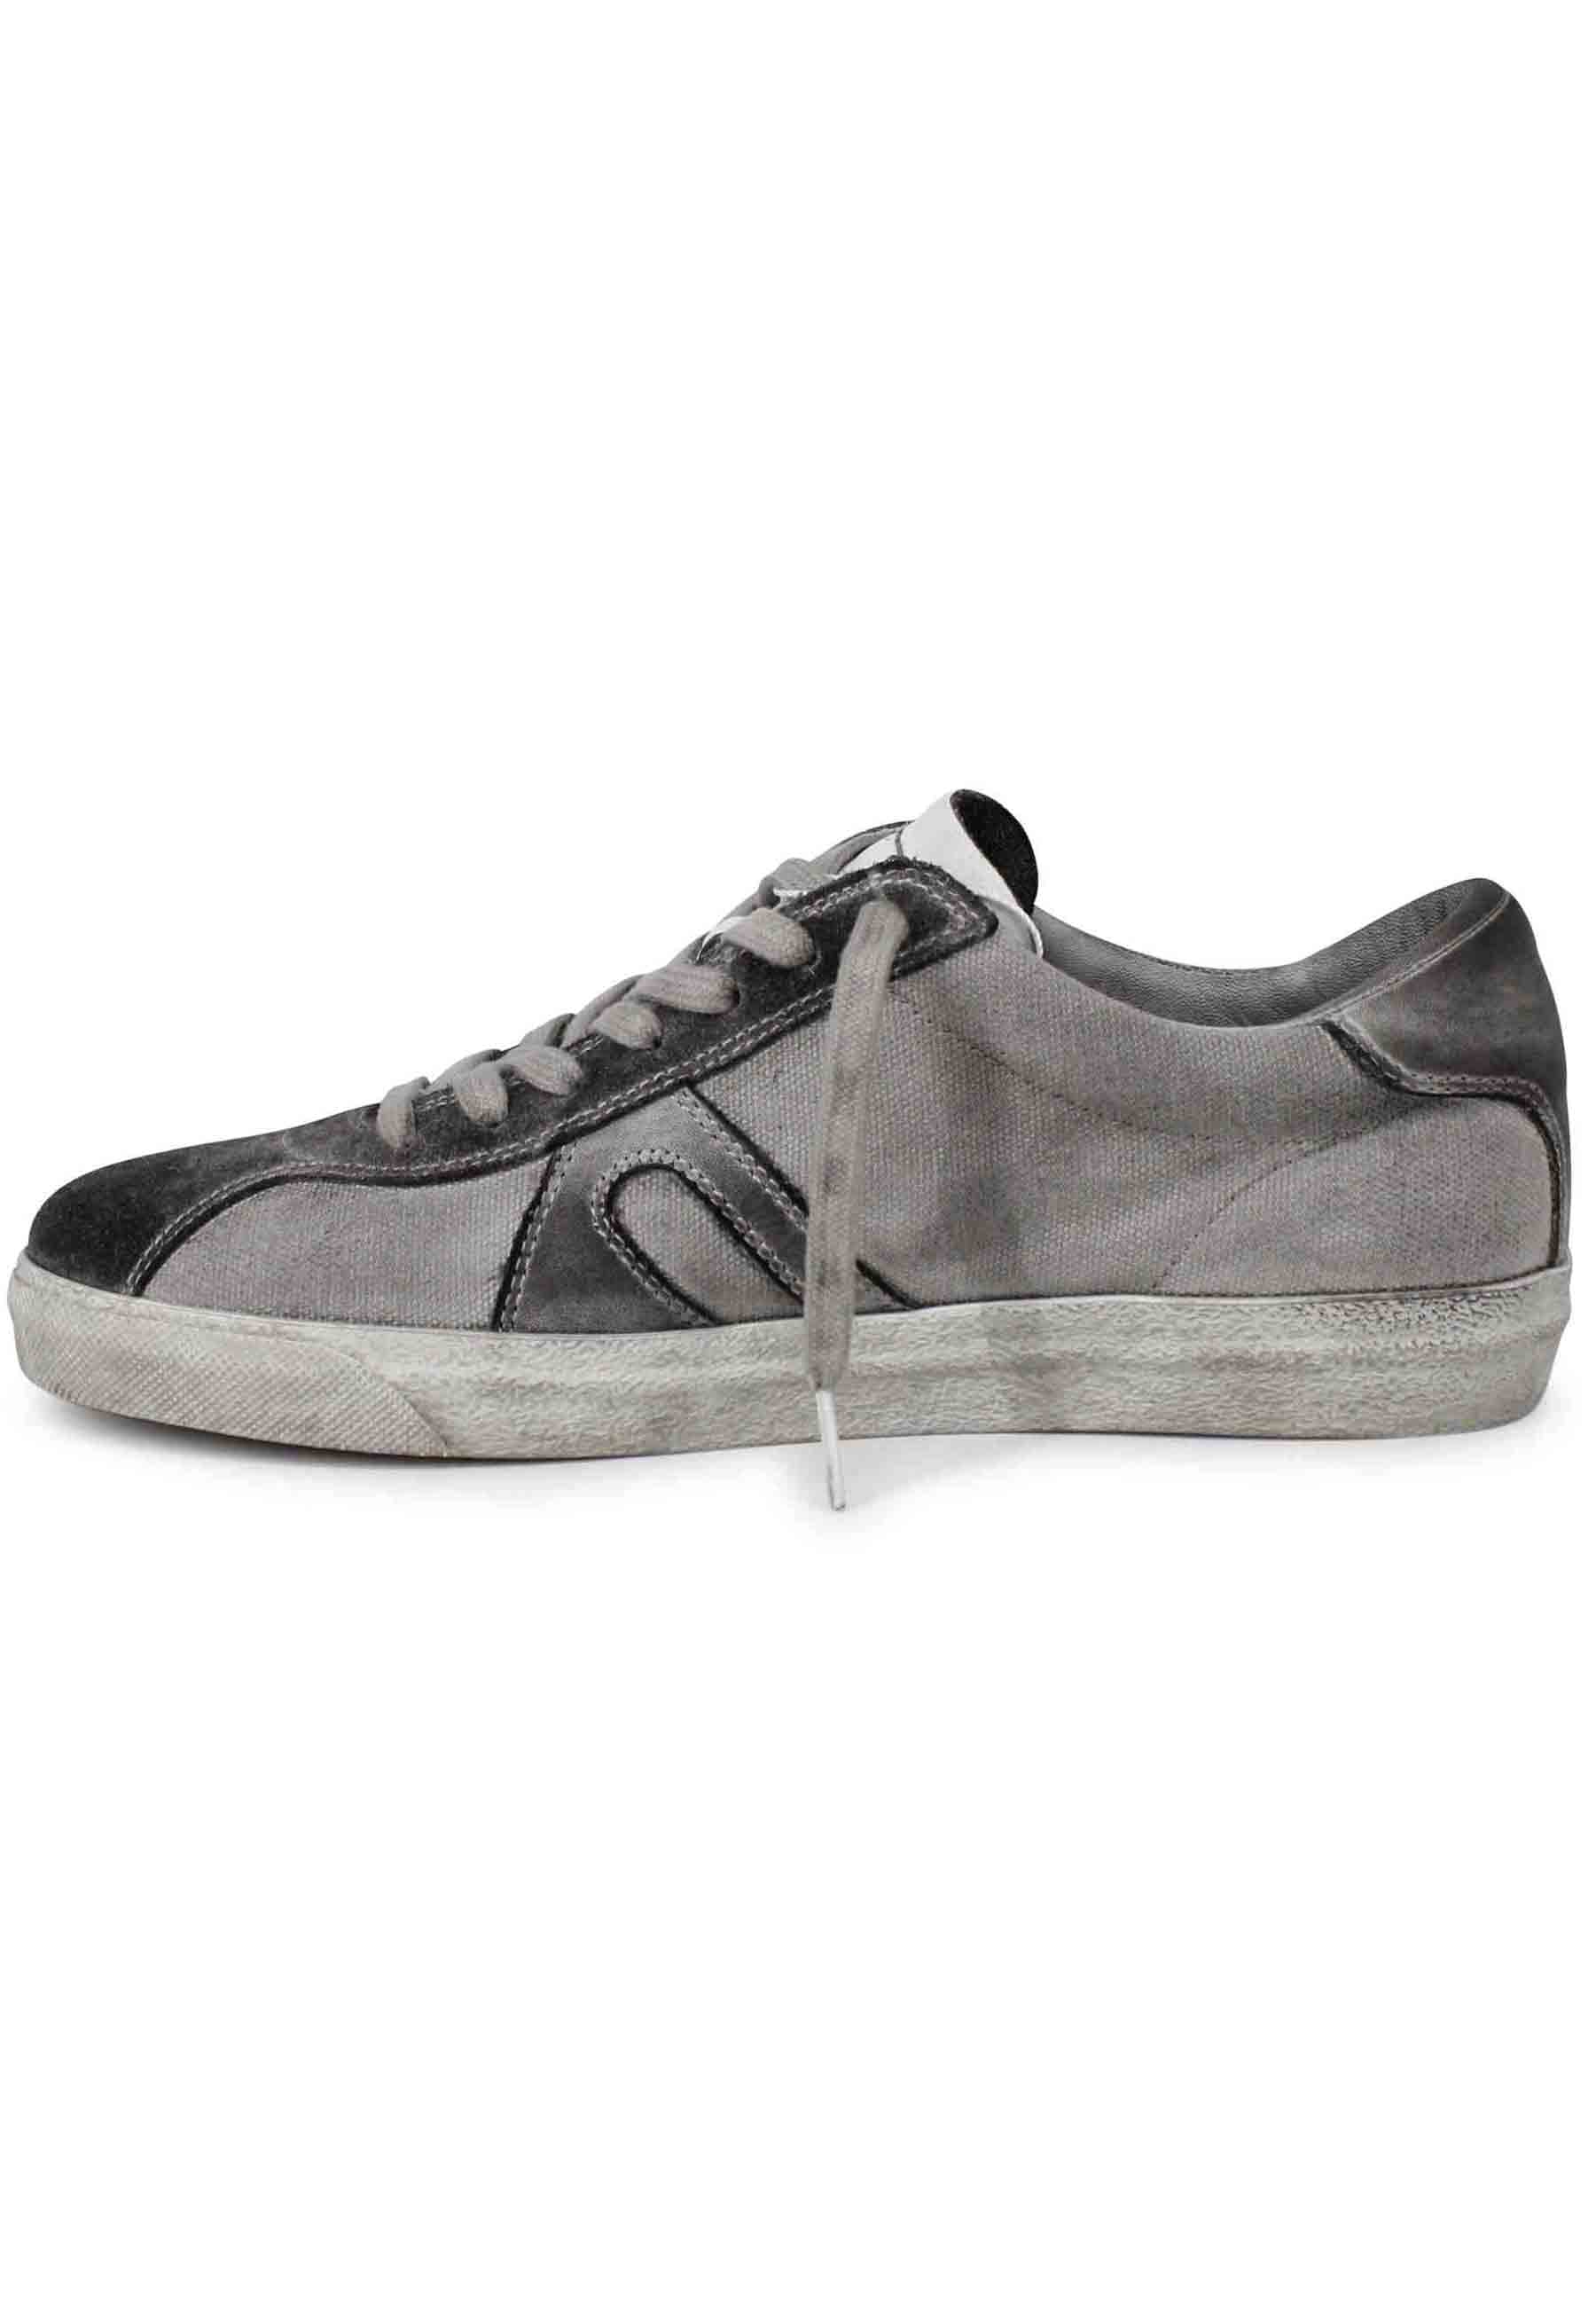 Sneakers uomo in canvas vintage grigio